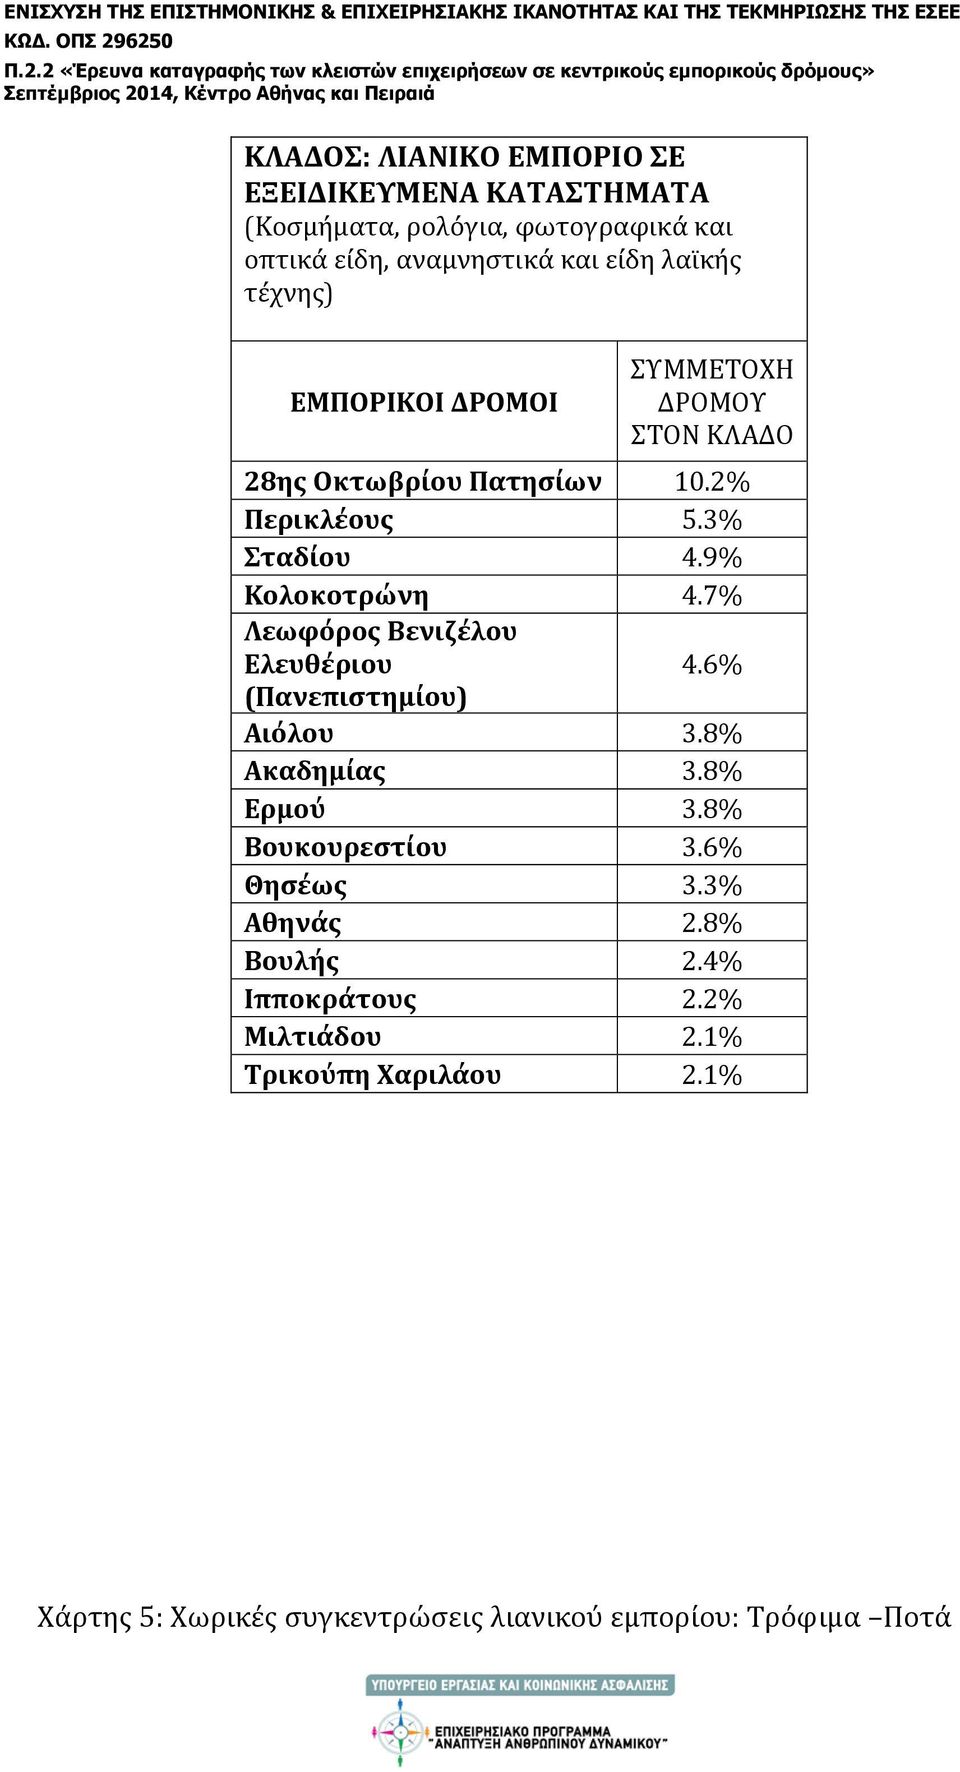 7% Λεωφόρος Βενιζέλου Ελευθέριου 4.6% (Πανεπιστημίου) Αιόλου 3.8% Ακαδημίας 3.8% Ερμού 3.8% Βουκουρεστίου 3.6% Θησέως 3.